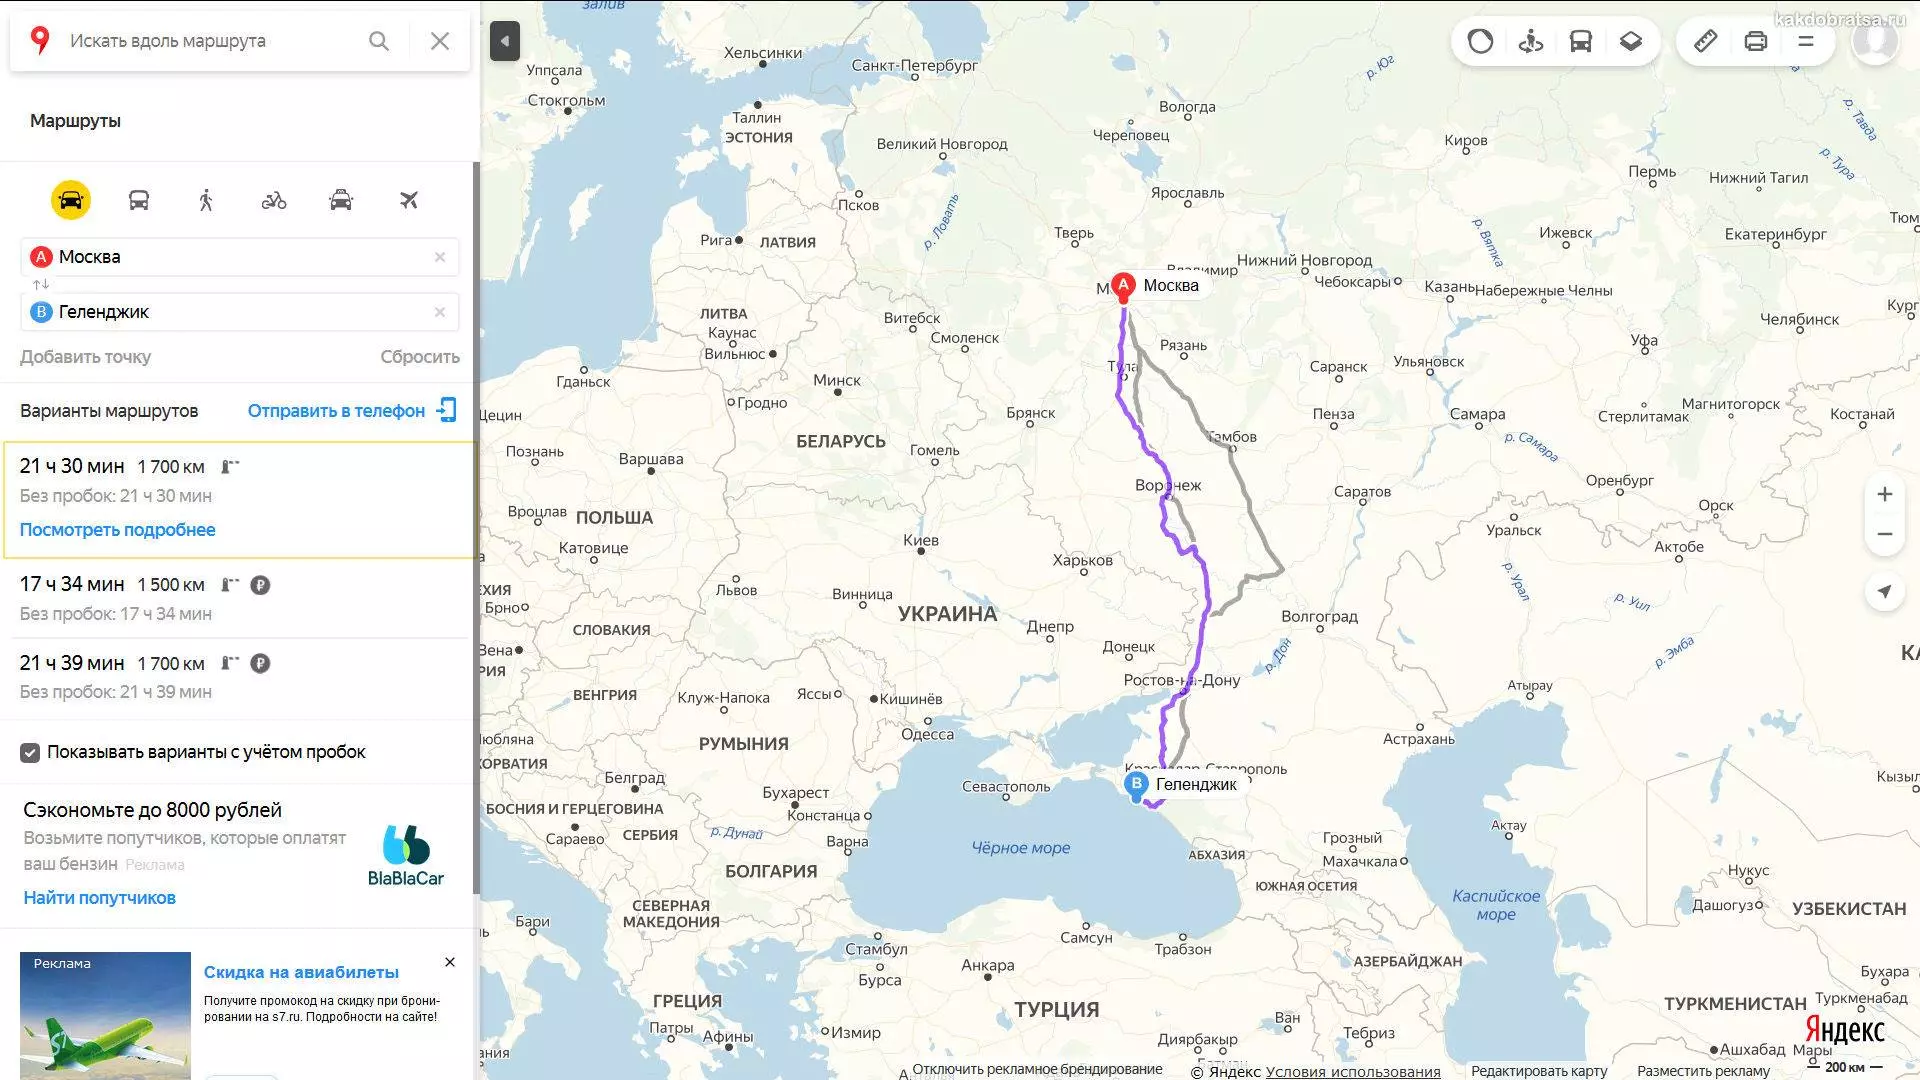 Как добраться из москвы в новороссийск: самолет, поезд, автобус или автомобиль?